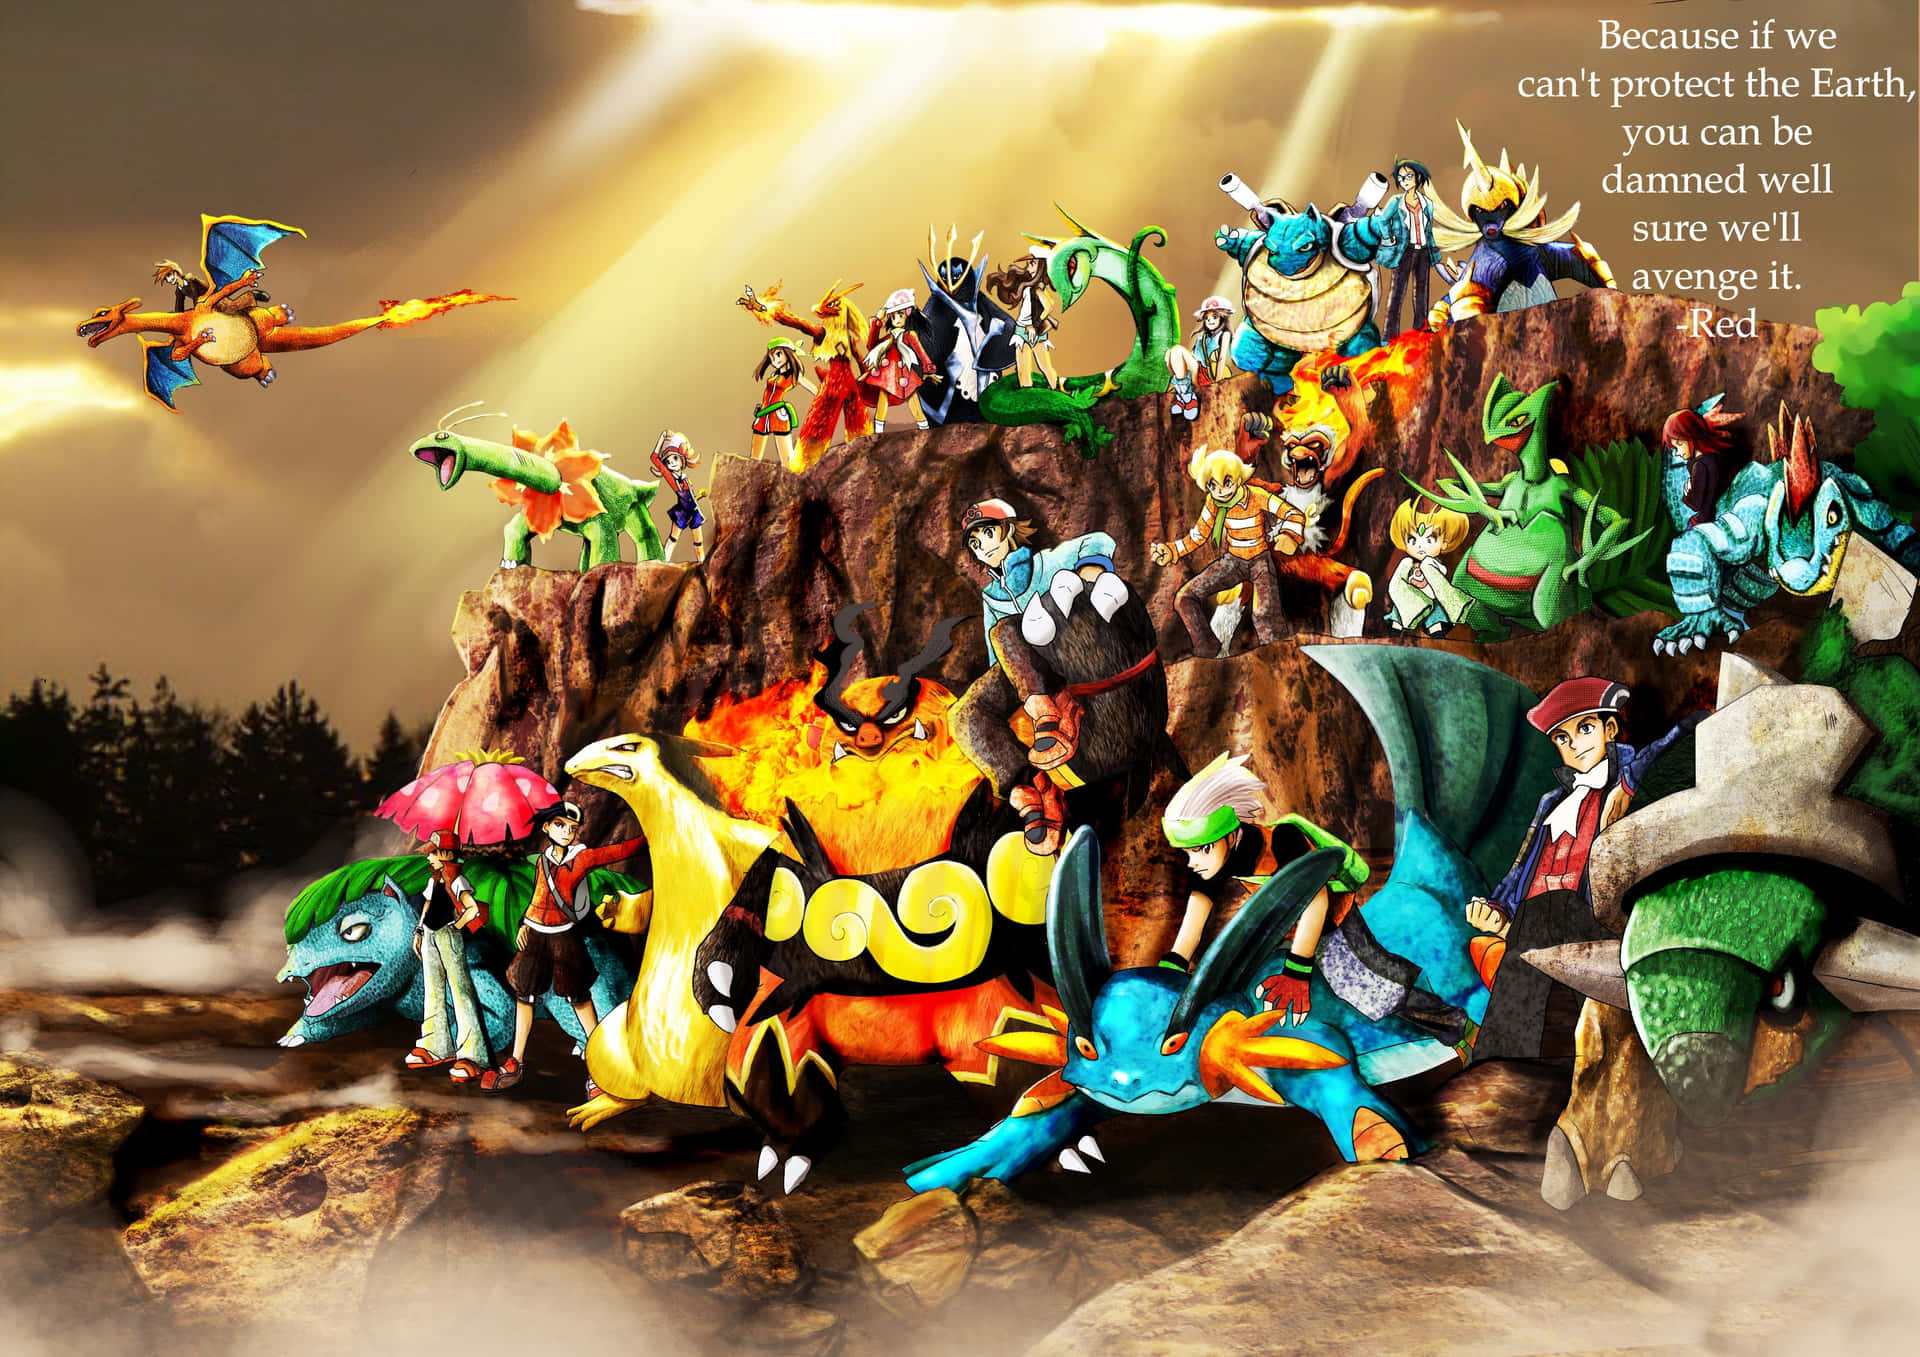 Pokemonun Grupo De Personajes En Una Roca